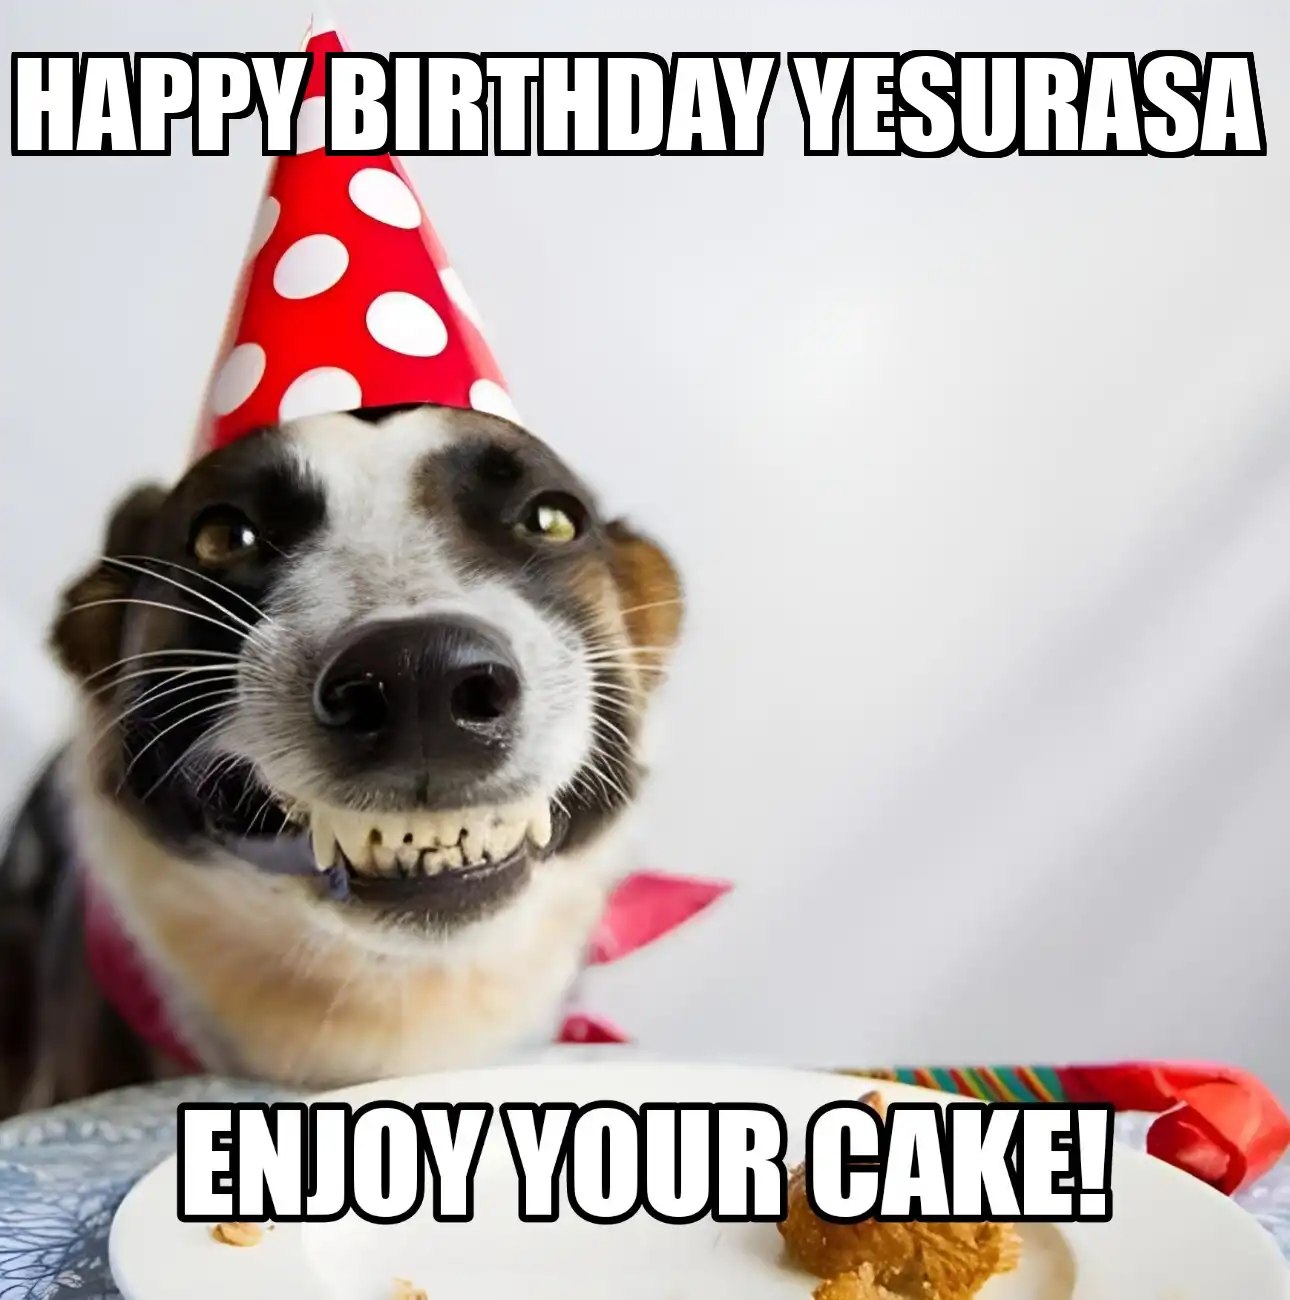 Happy Birthday Yesurasa Enjoy Your Cake Dog Meme